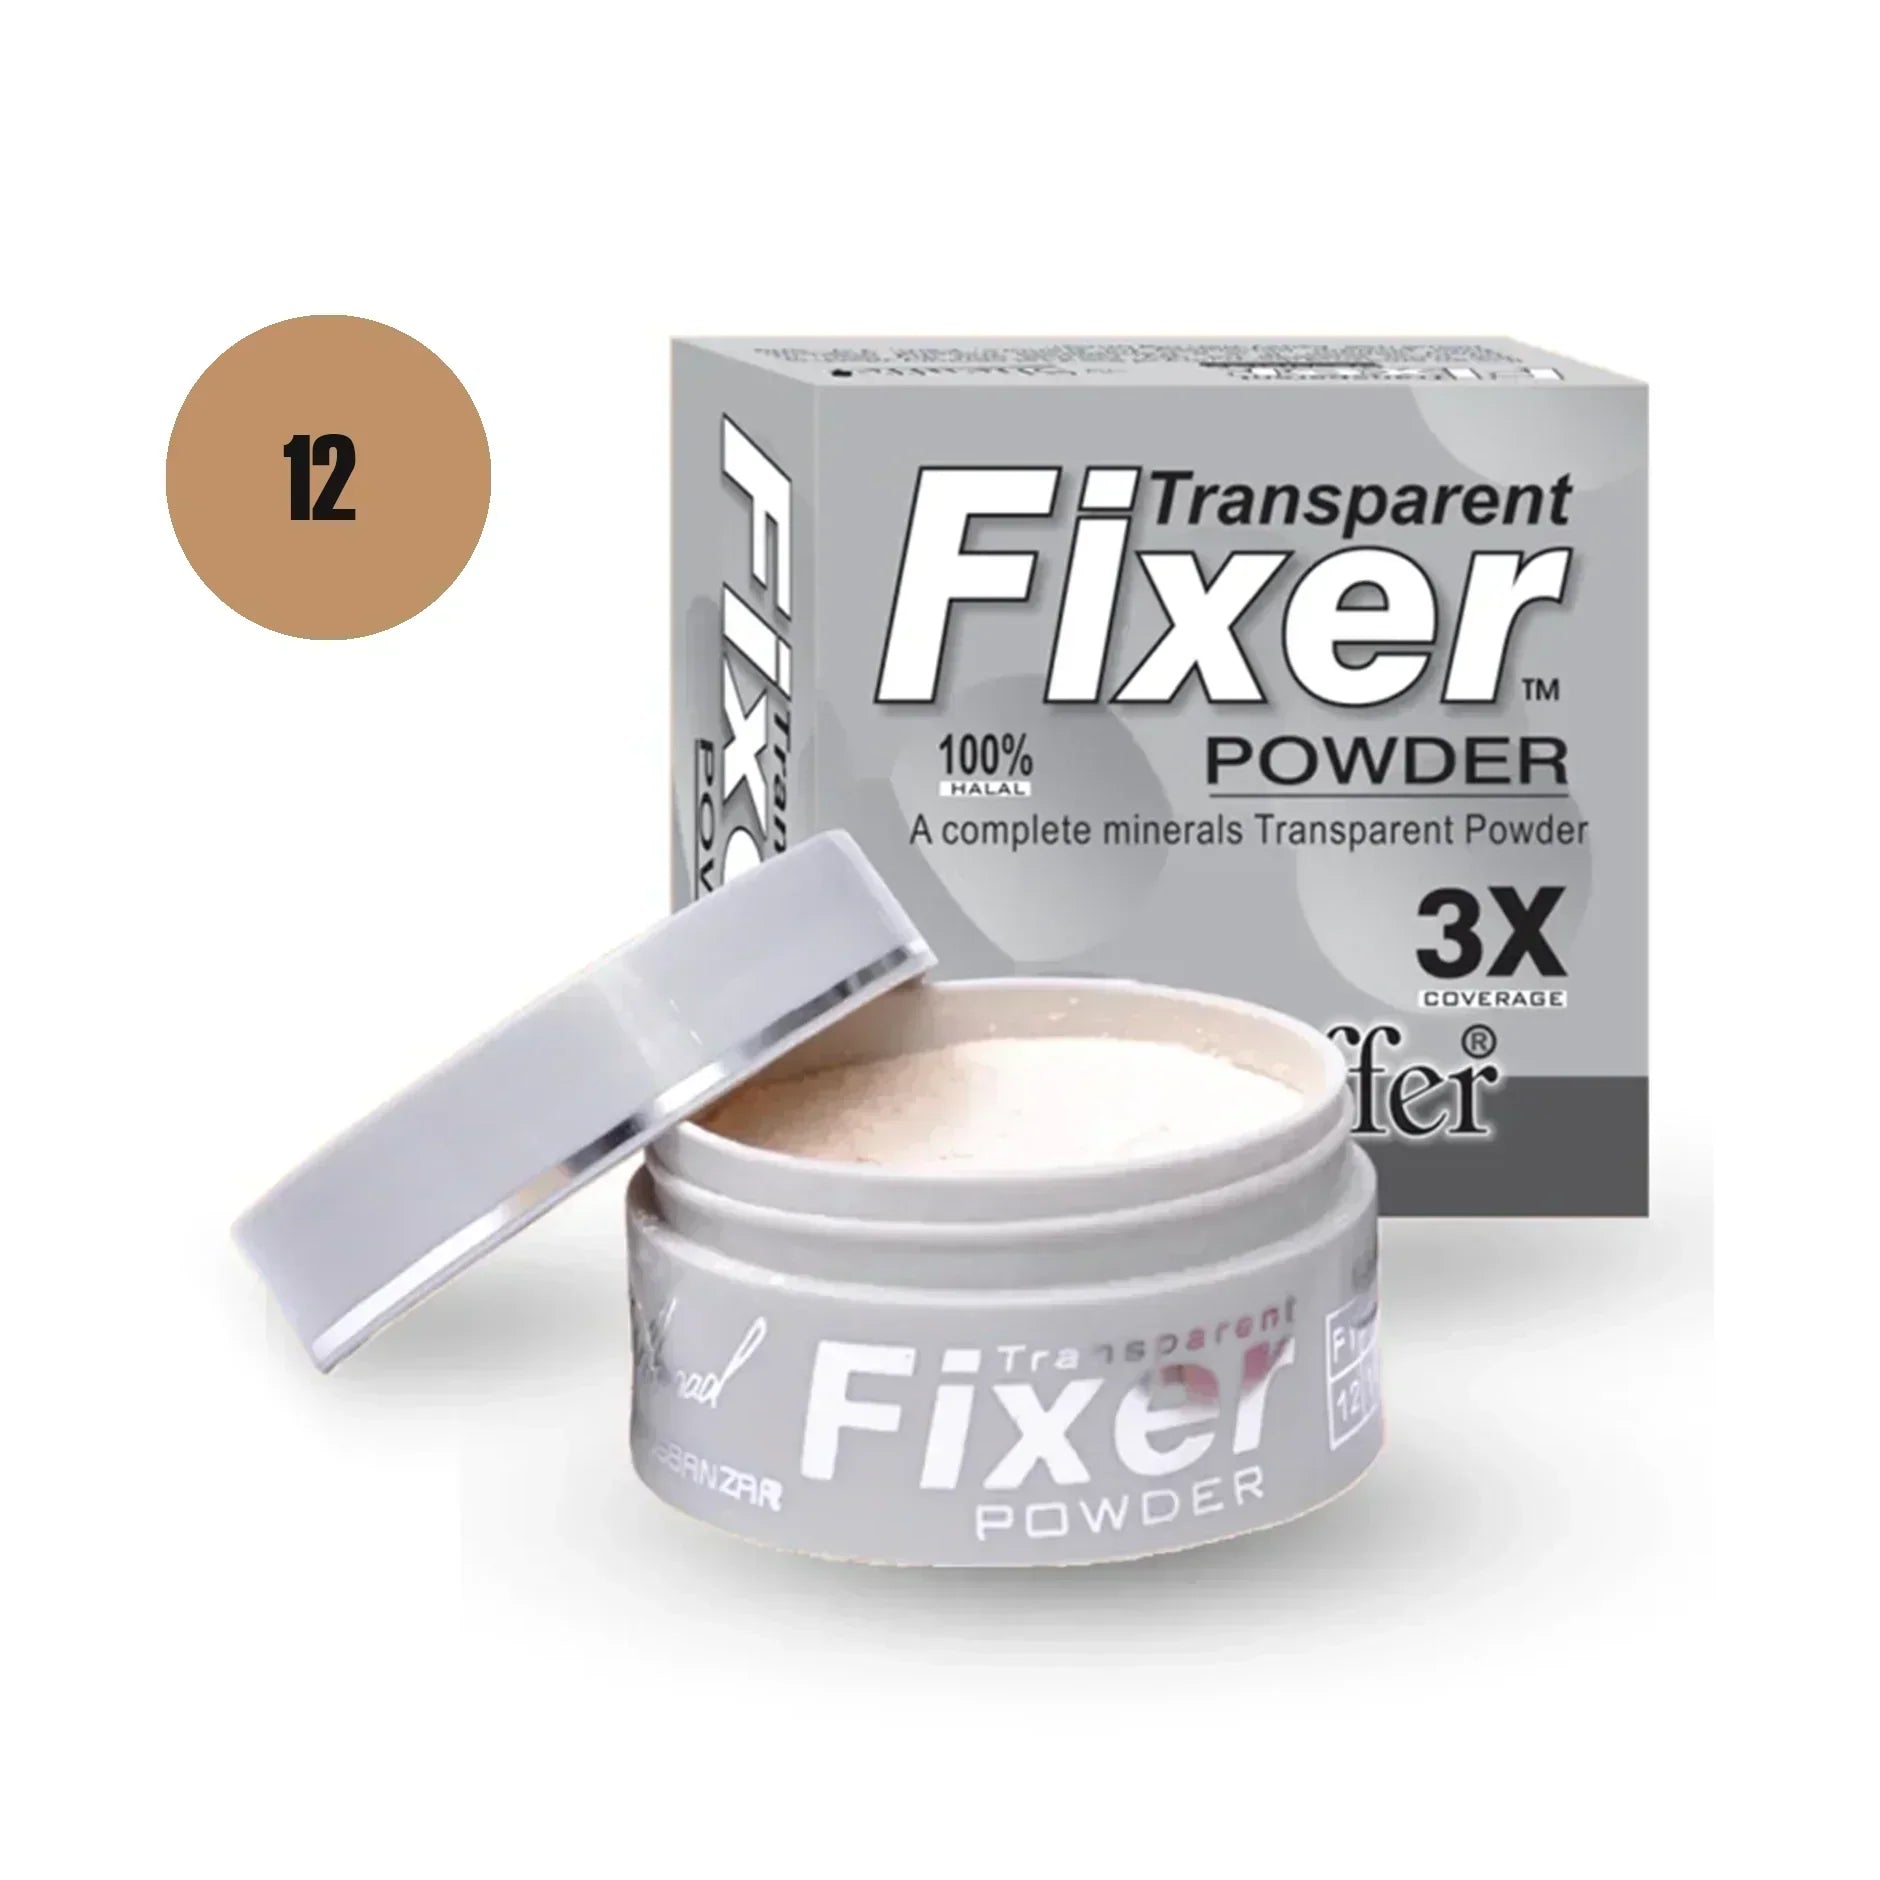 Sheaffer Transparent Fixer Powder Shade No 16 - Retailershop - Online Shopping Center